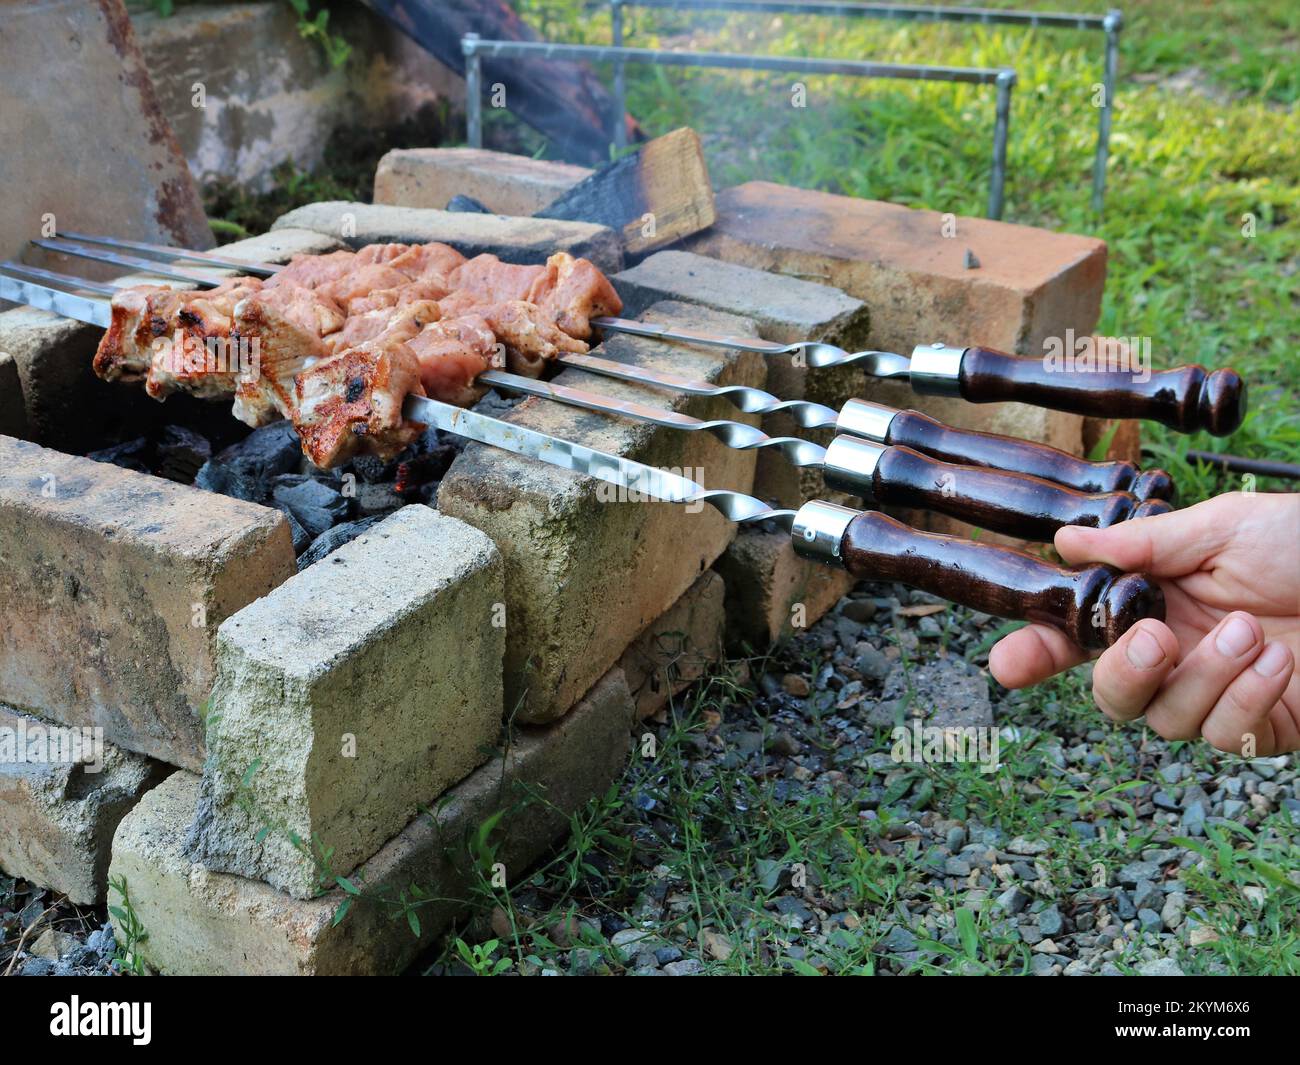 Ein willkürlicher Ort aus Ziegelsteinen für ein Feuer und Grillen marinierter Schweinespieße, Kochen von Fleisch auf Spießen mit wunderschönen Holzgriffen auf Kohlen im Freien Stockfoto